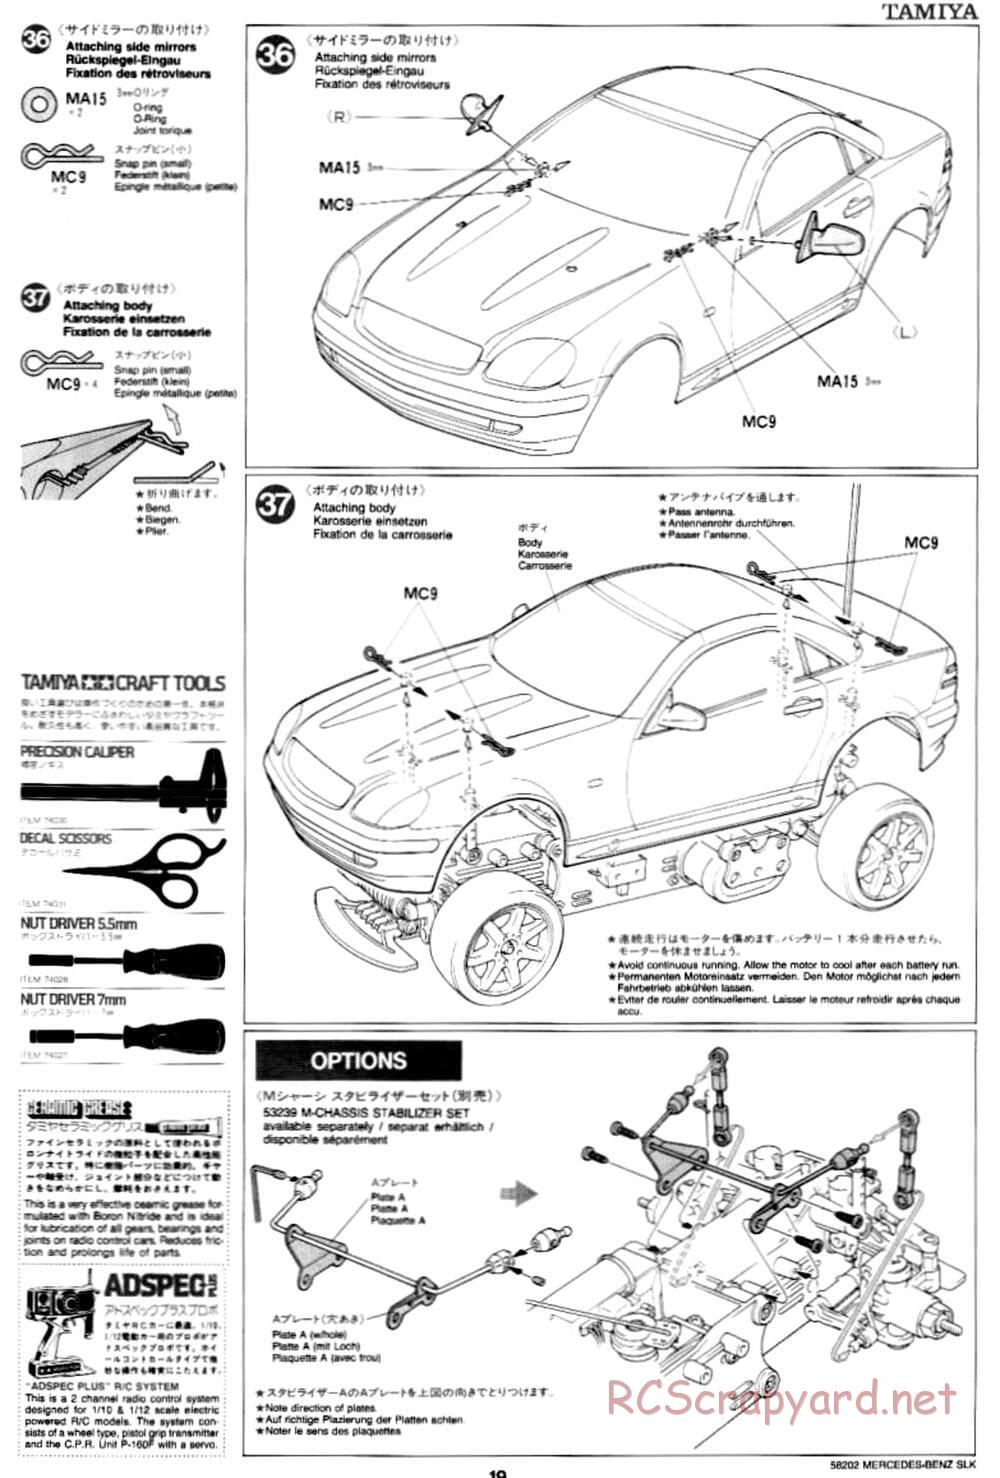 Tamiya - Mercedes-Benz SLK - M02L Chassis - Manual - Page 19